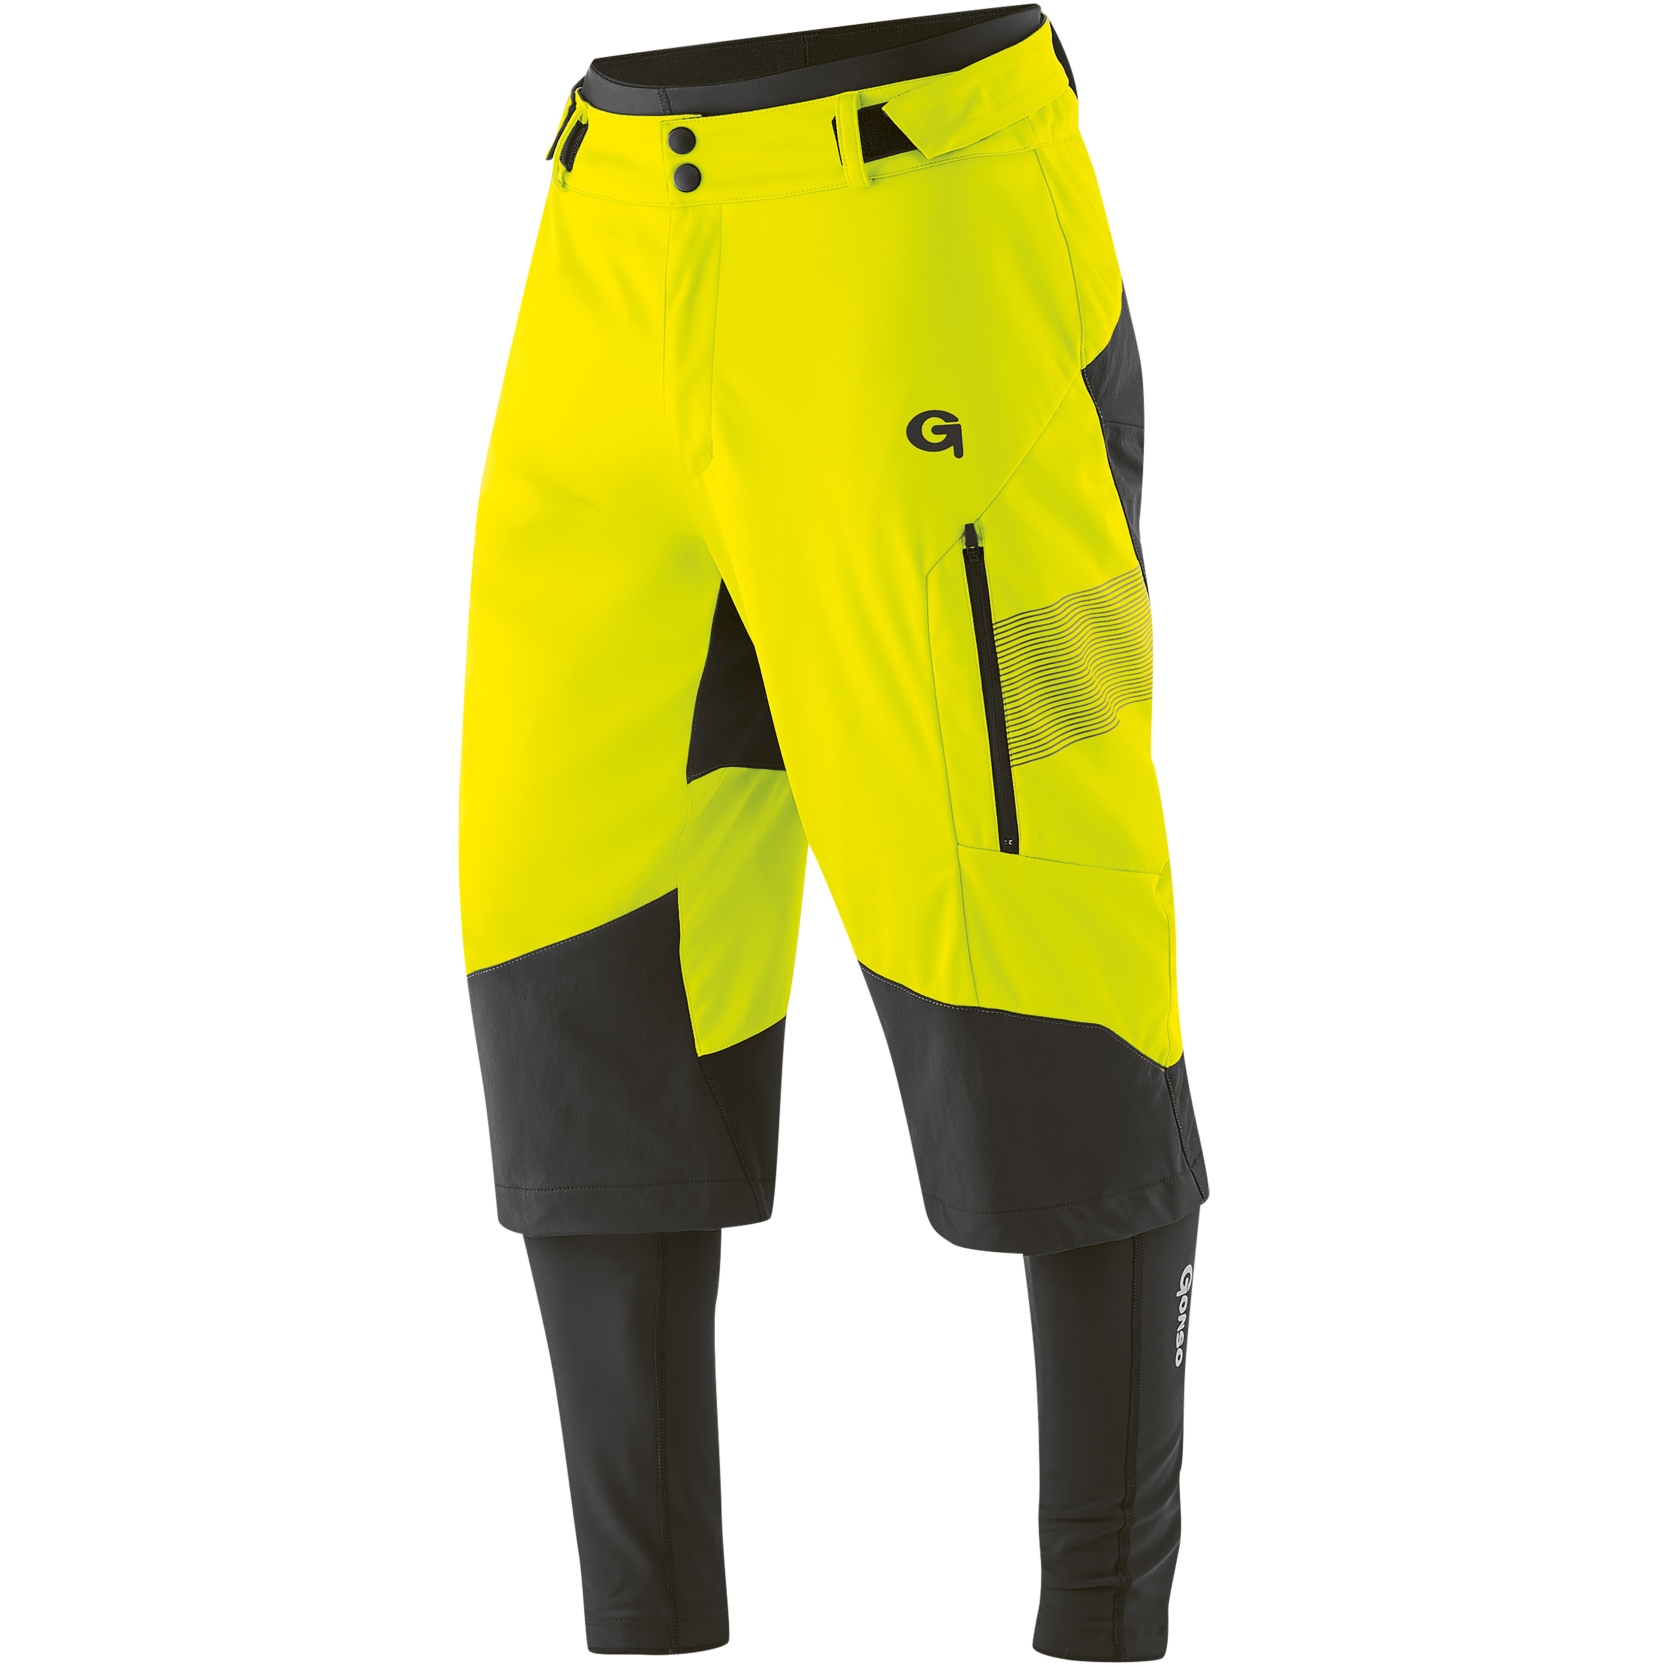 Produktbild von Gonso Sirac Herren 3-in-1 Bikeshorts - Safety Yellow